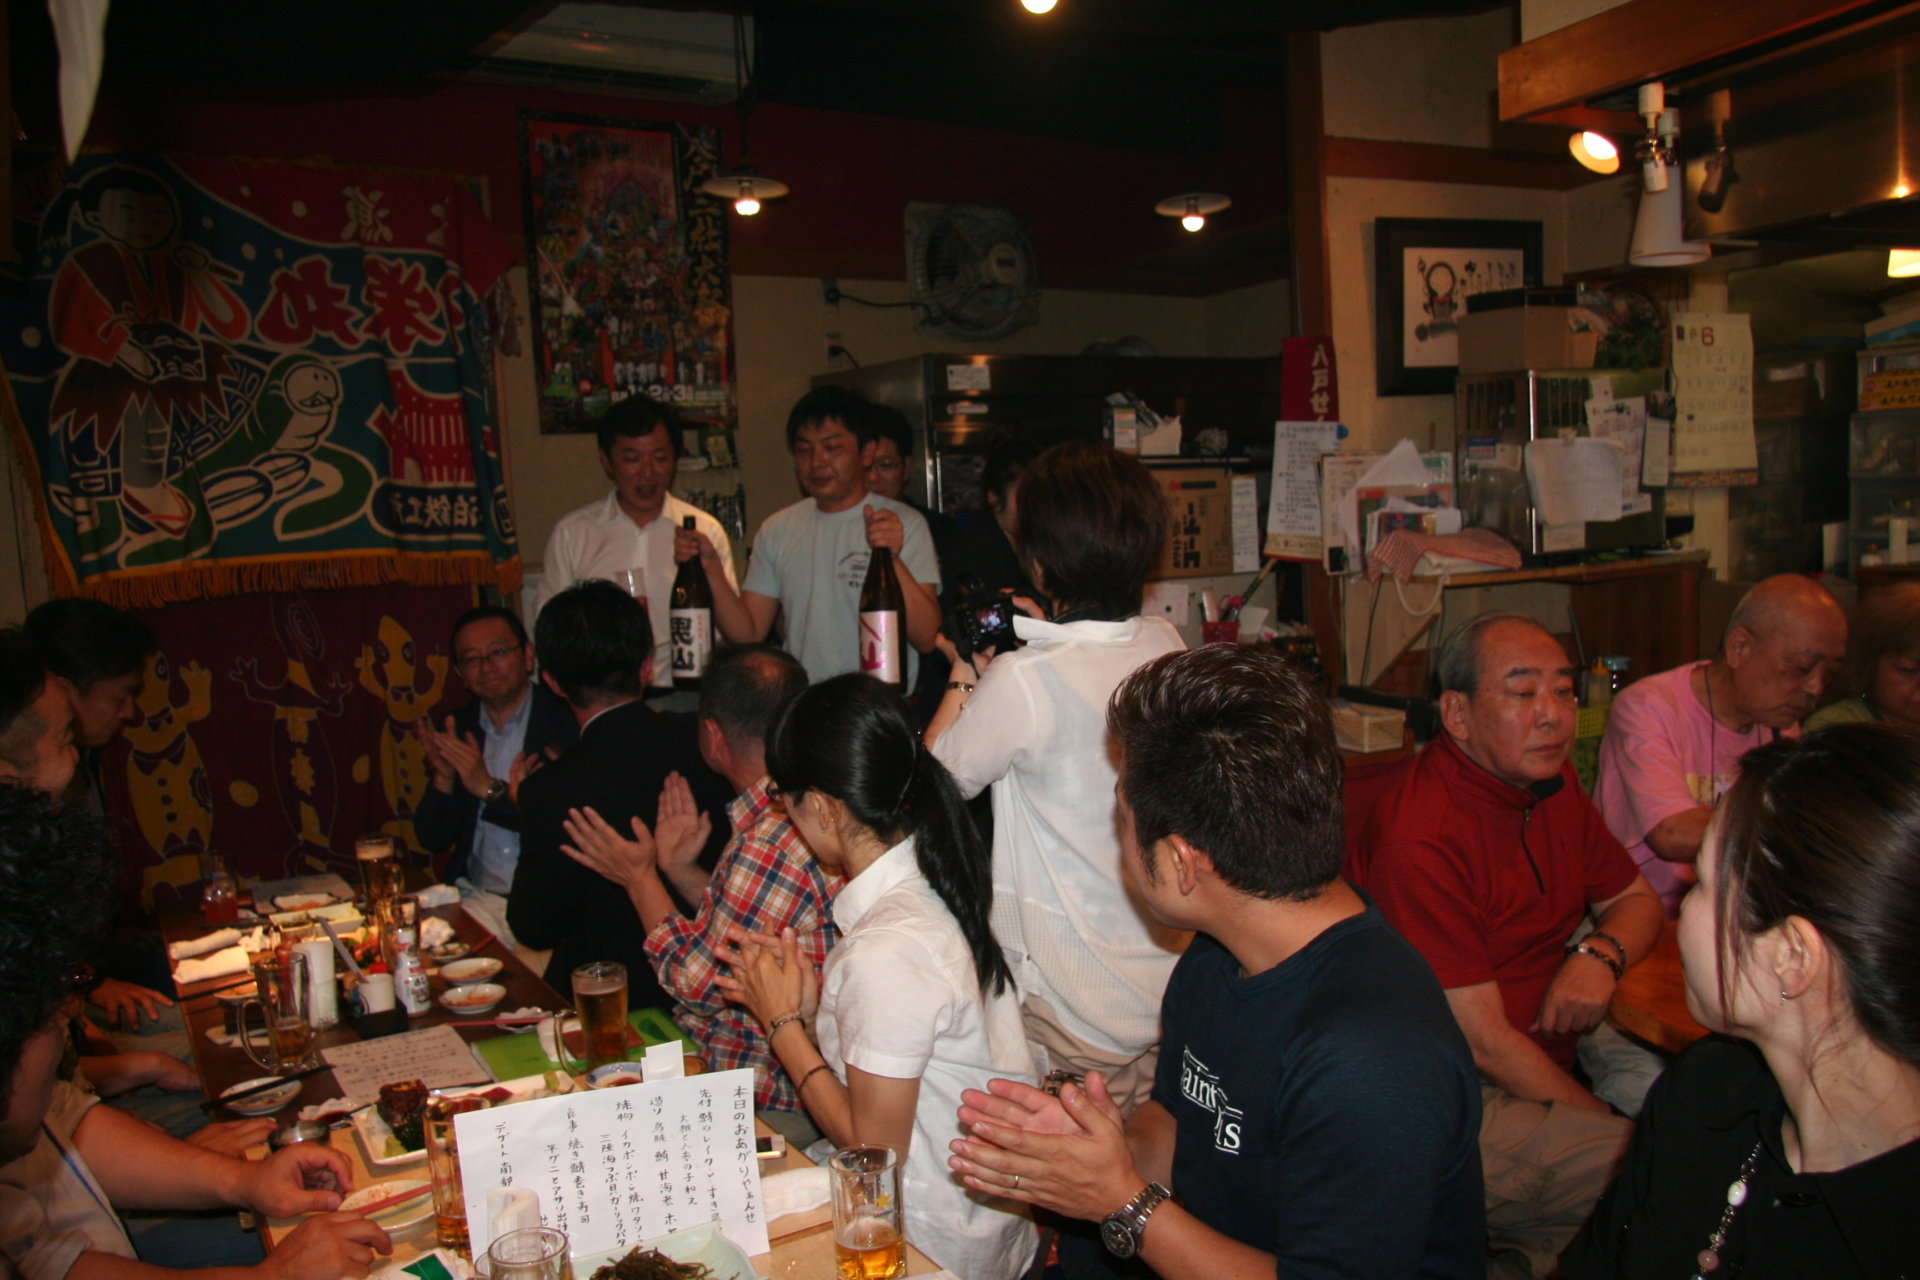 IMG 8928 1 1920x1280 - 2015年6月15日 AOsuki定例飲み会開催しました。